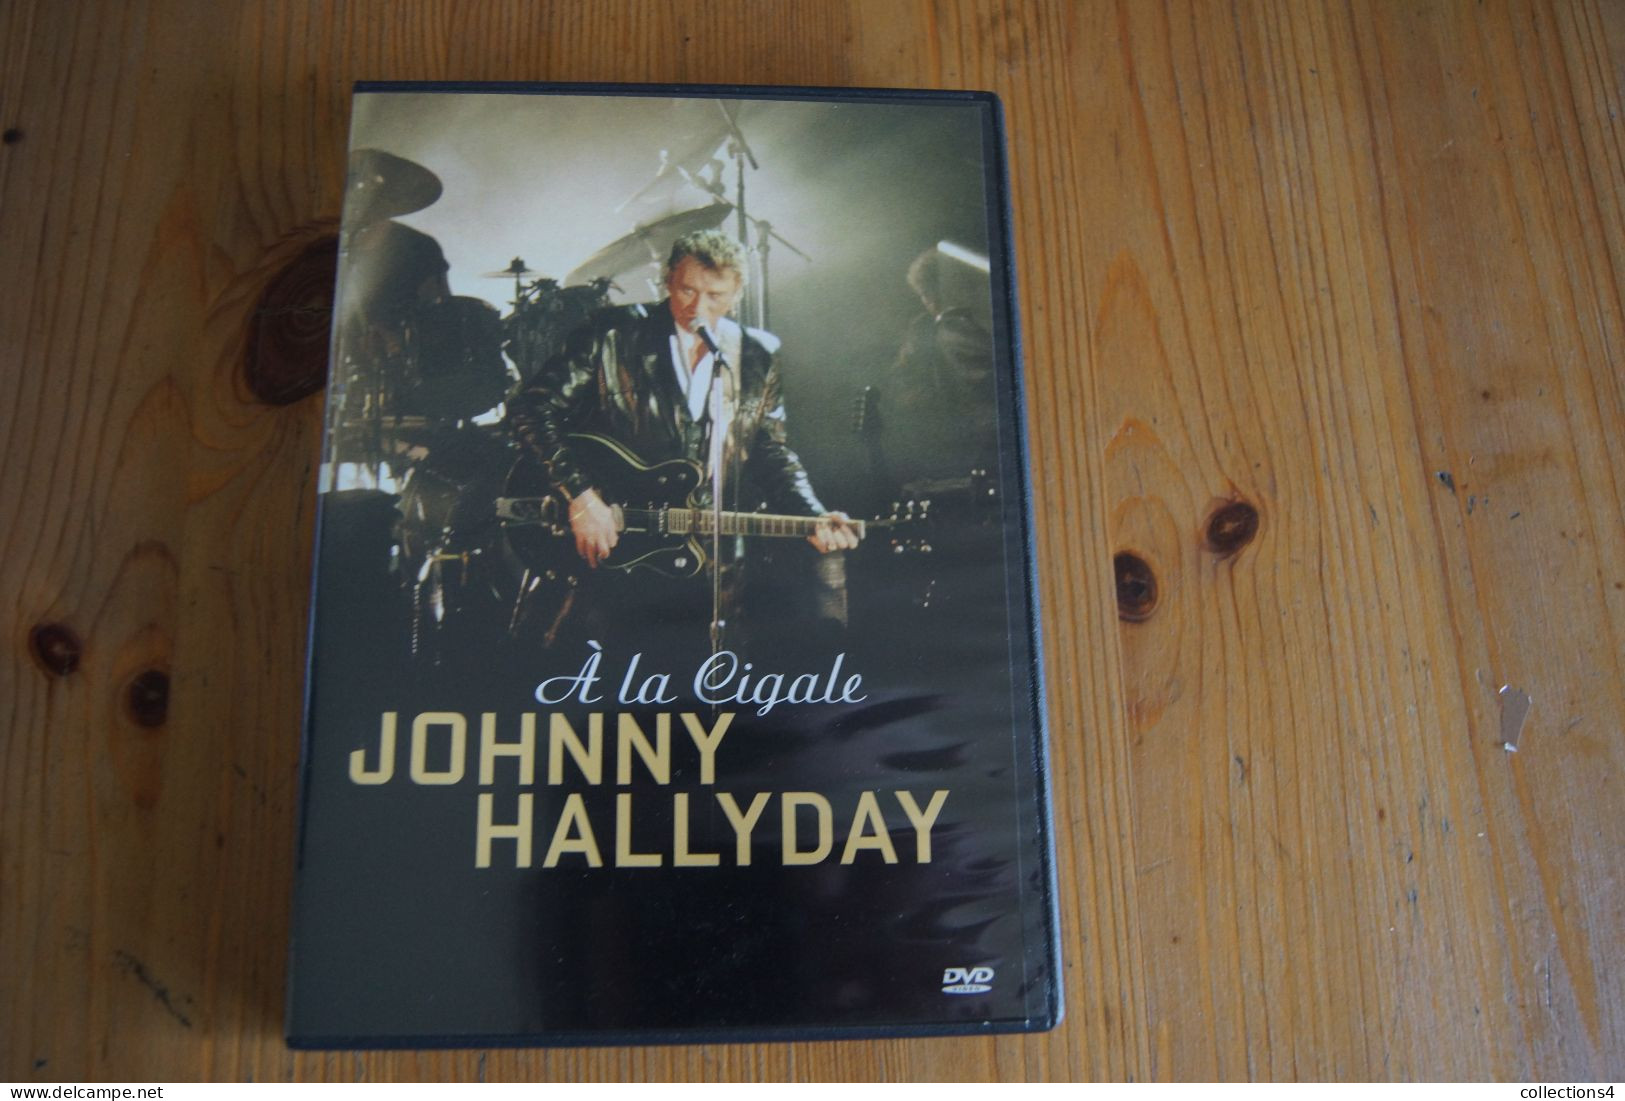 JOHNNY HALLYDAY A LA CIGALE   DVD   SORTIE 2004 - DVD Musicales